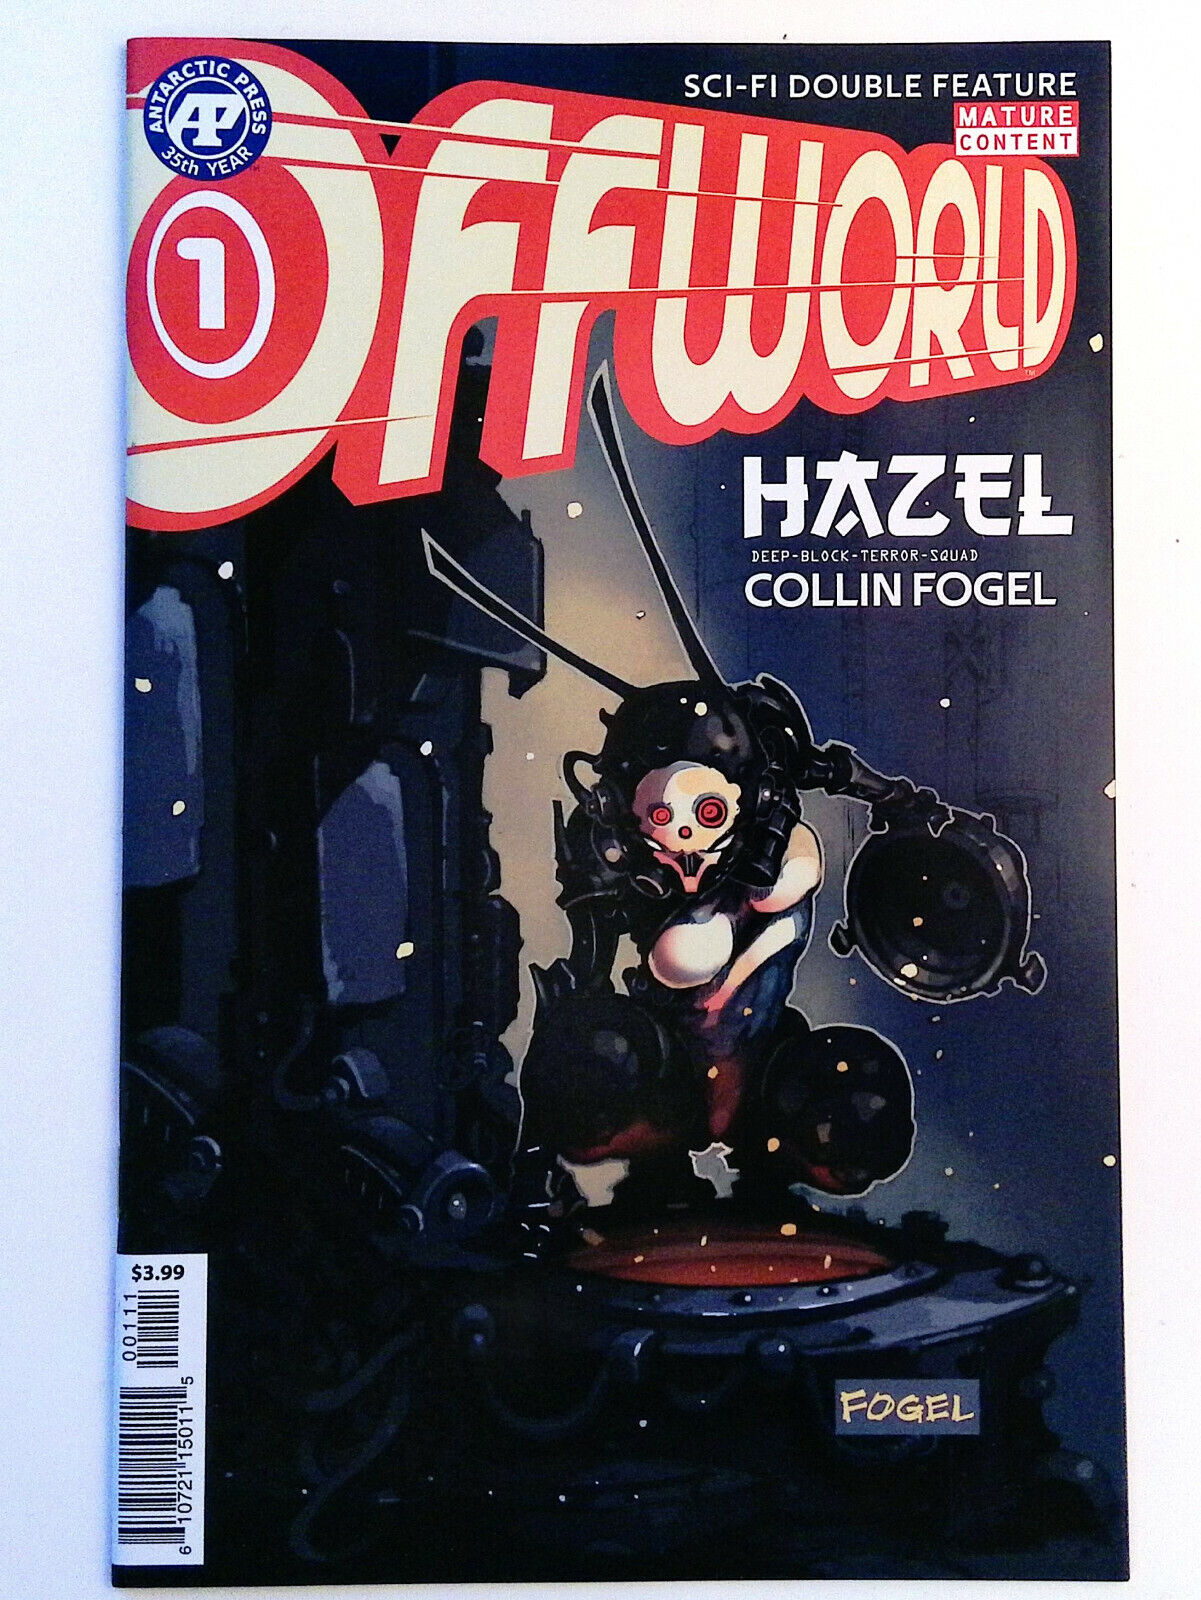 OFFWORLD comic # 1 & # 2 ~ 1st Appearance of HAZEL / INTERSTELLAR DUST